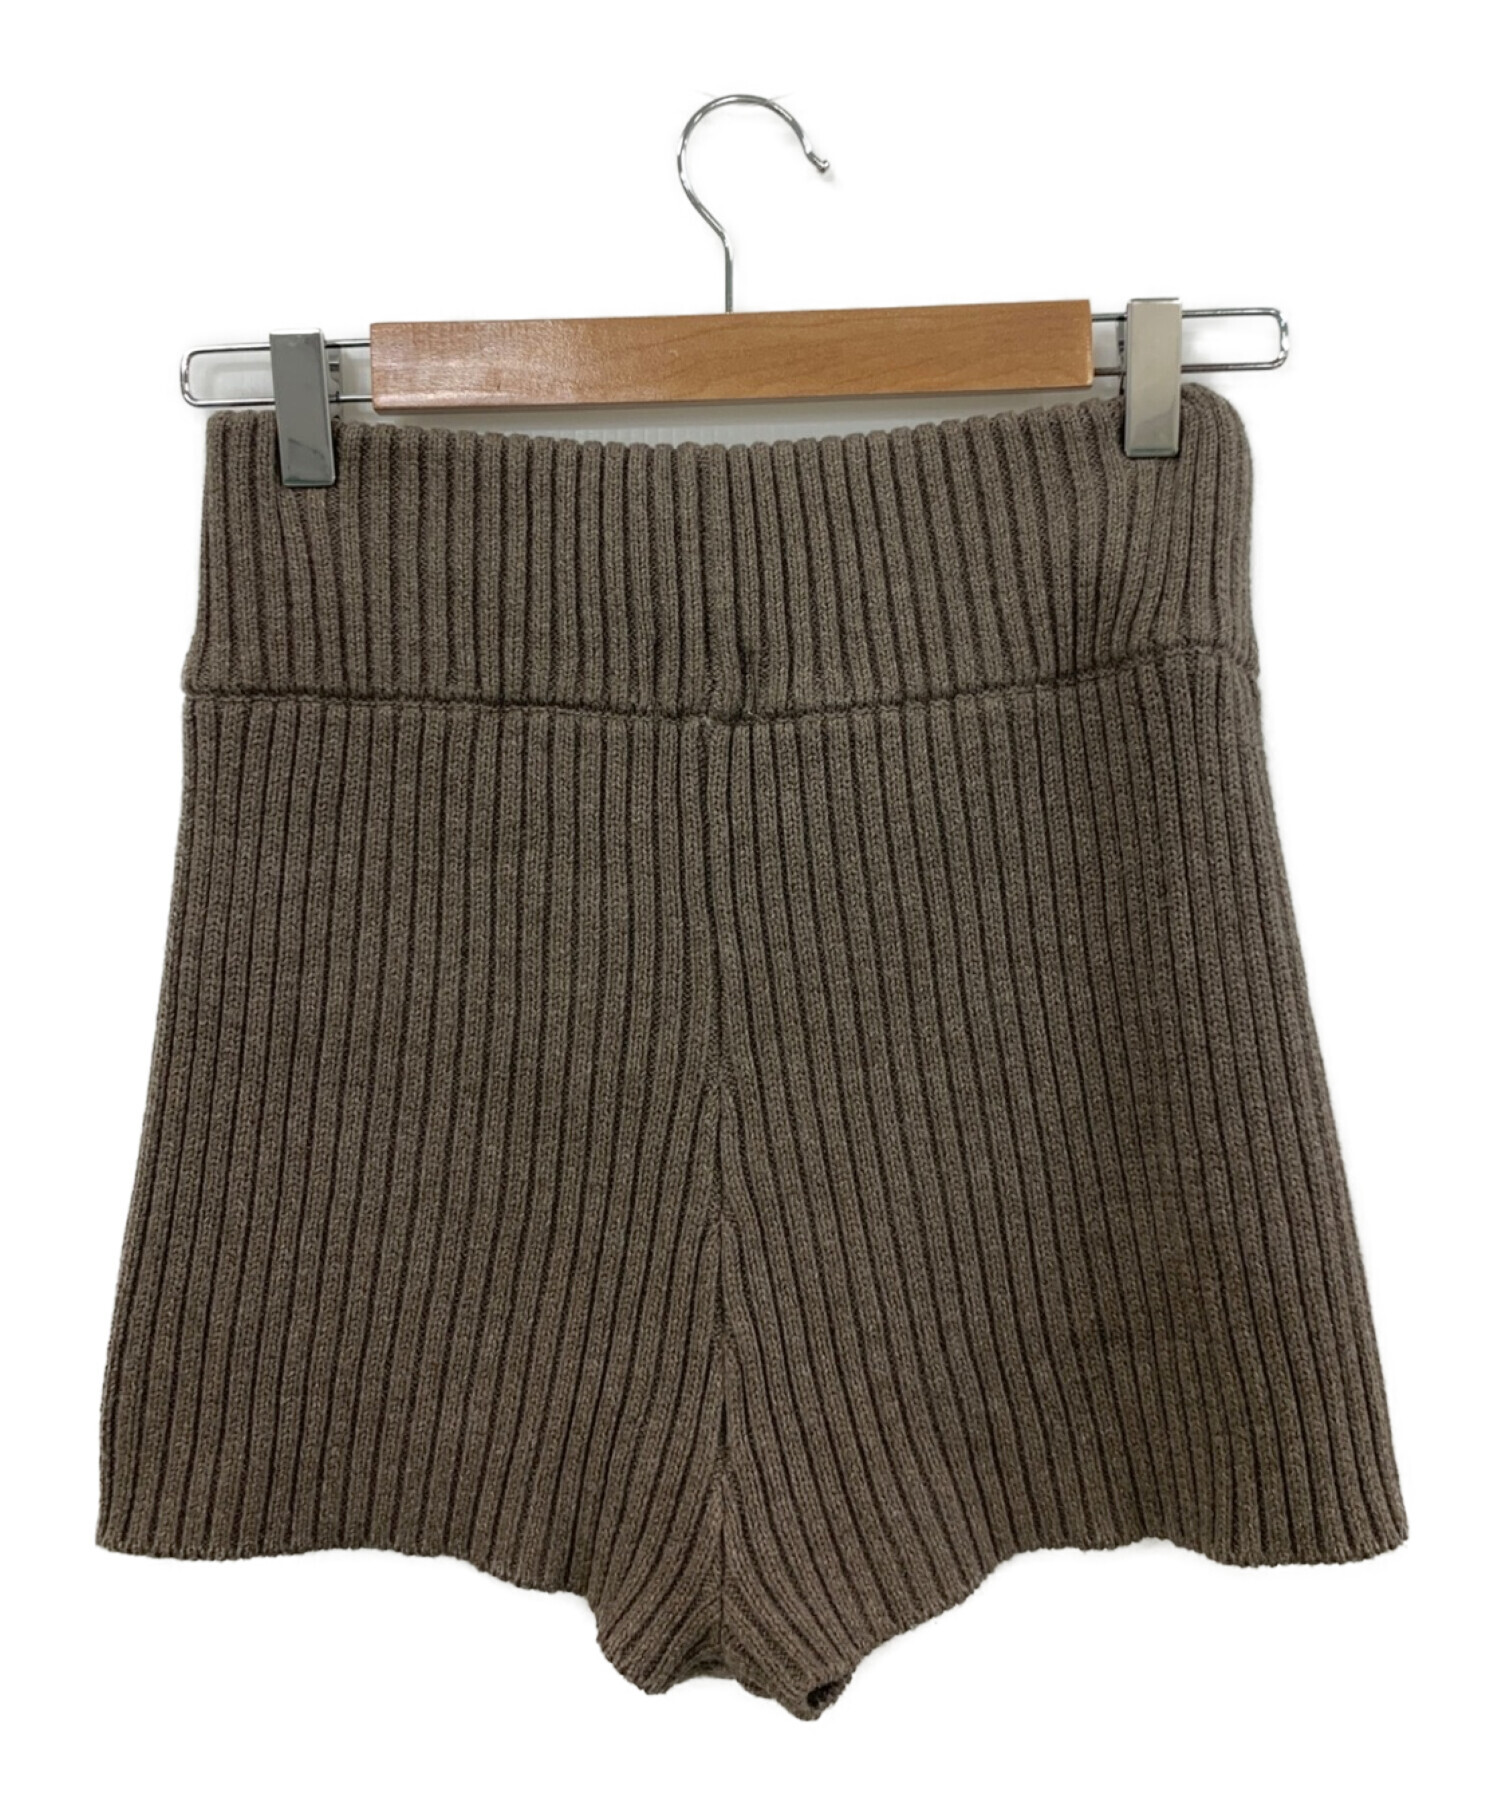 通販早割juemi Heather Knit Shorts オリーブ 新品未使用 ショートパンツ